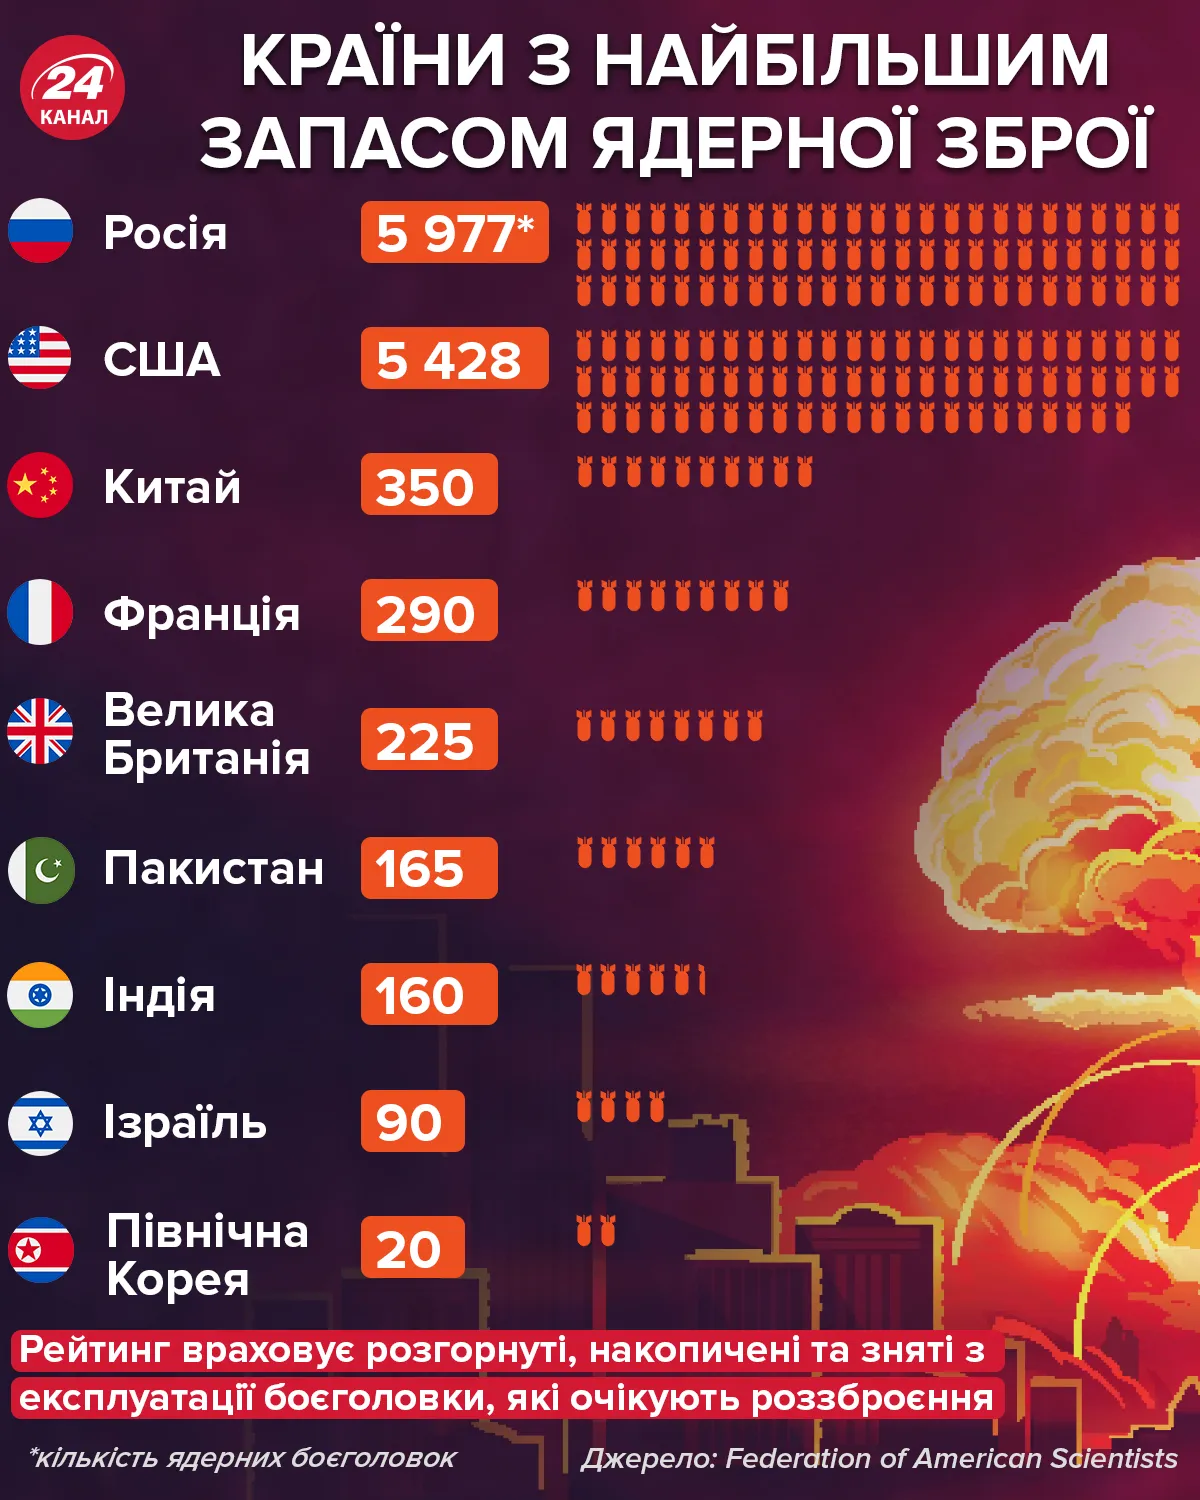 Страны с наибольшим запасом ядерного оружия / Инфографика 24 канала